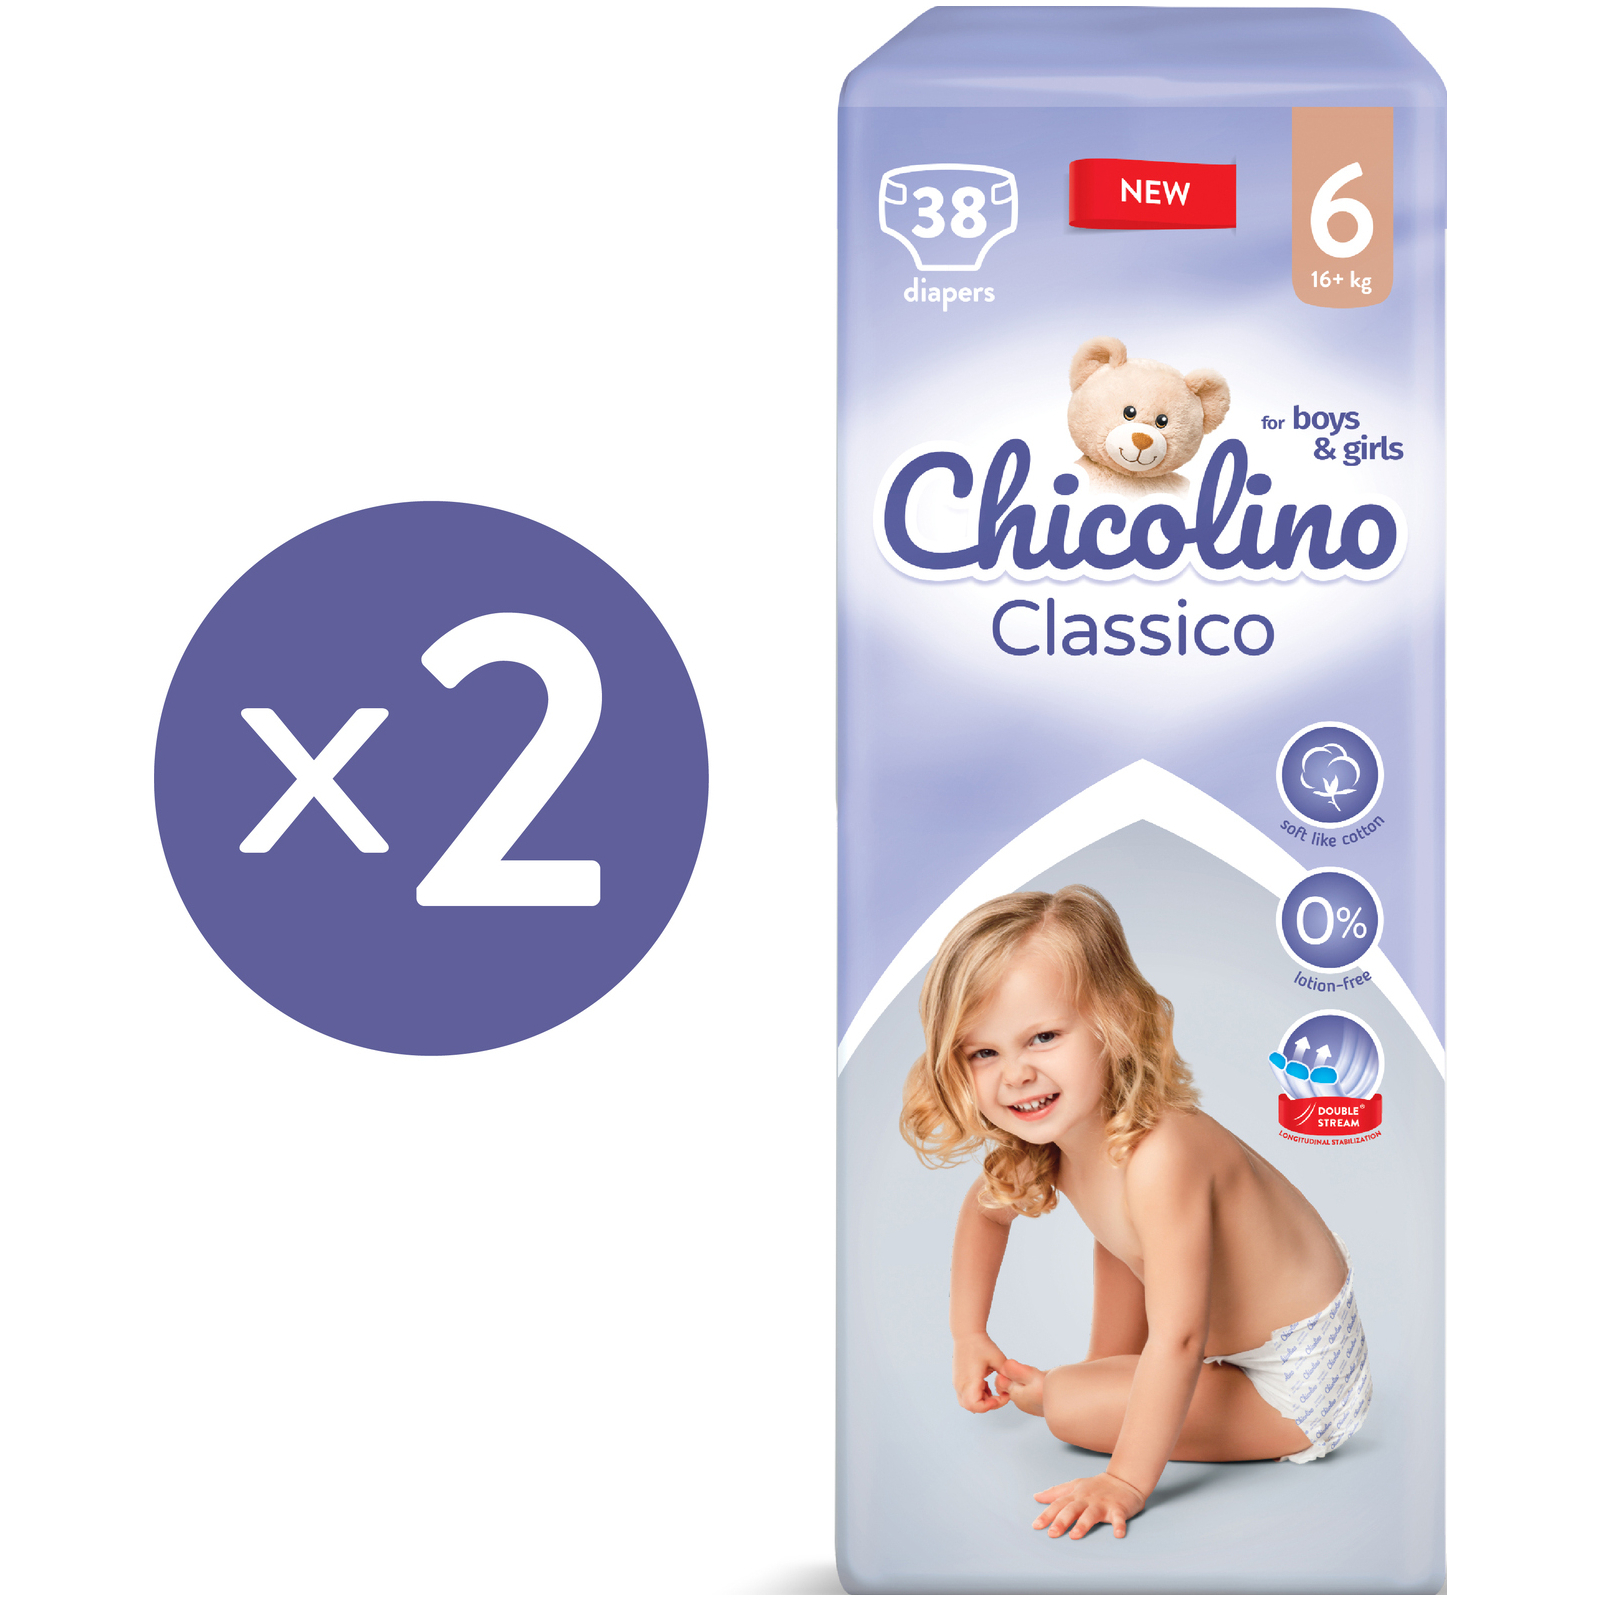 Підгузки Chicolino Medium Classico 6 Розмір (16+ кг) 28 шт (4823098410836) зображення 2